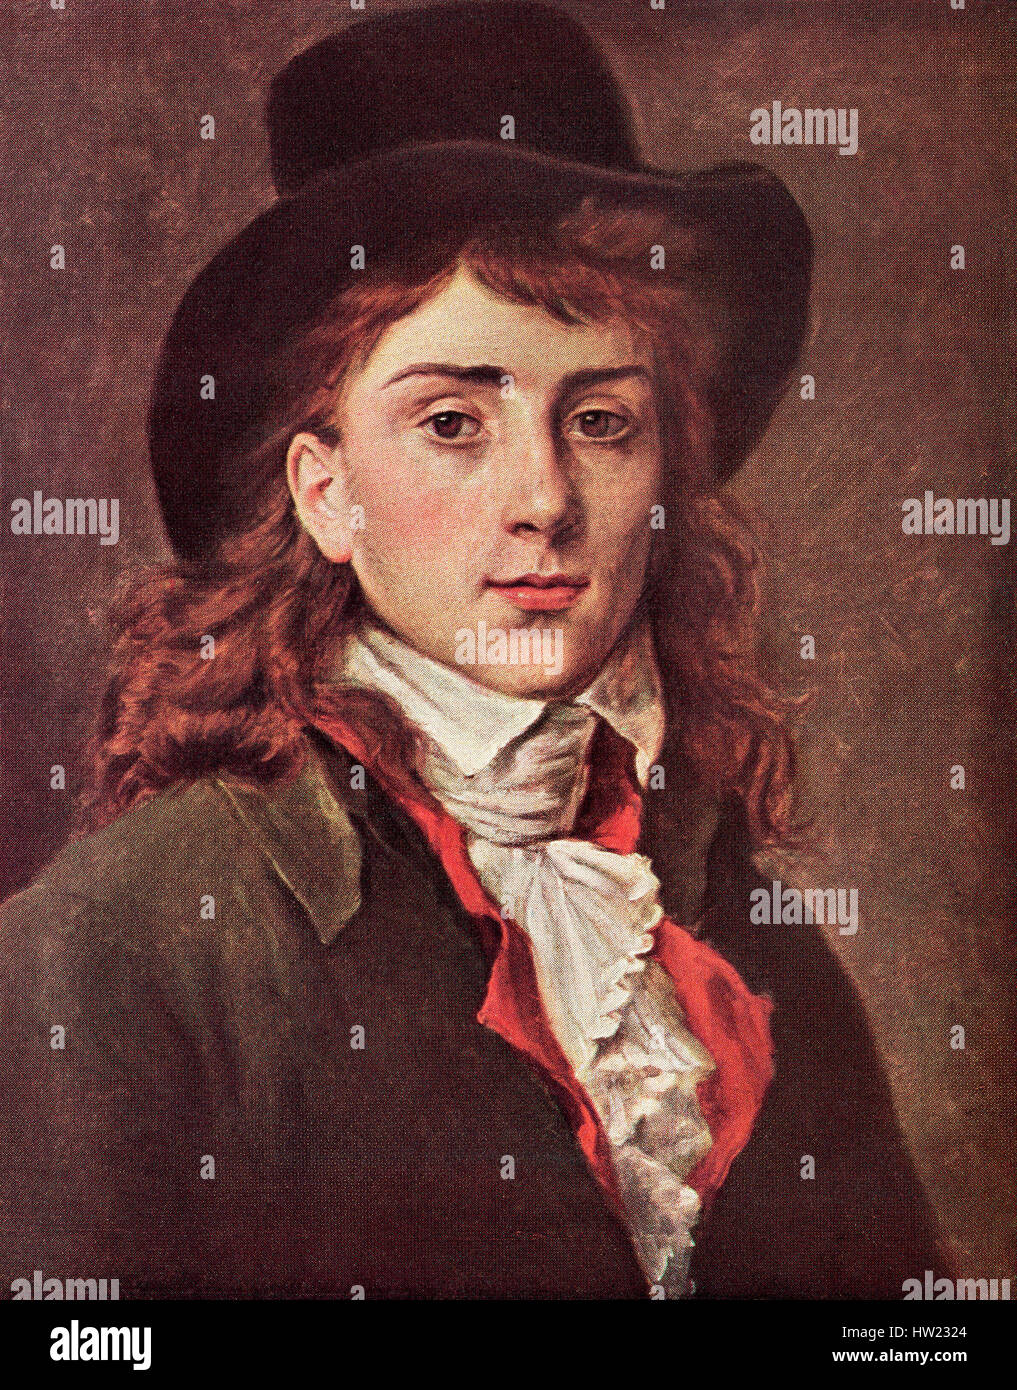 Antoine-Jean Gros, 1771 - 1835, aka Baron Gros. La storia della Francia e pittore neoclassico. . Foto Stock